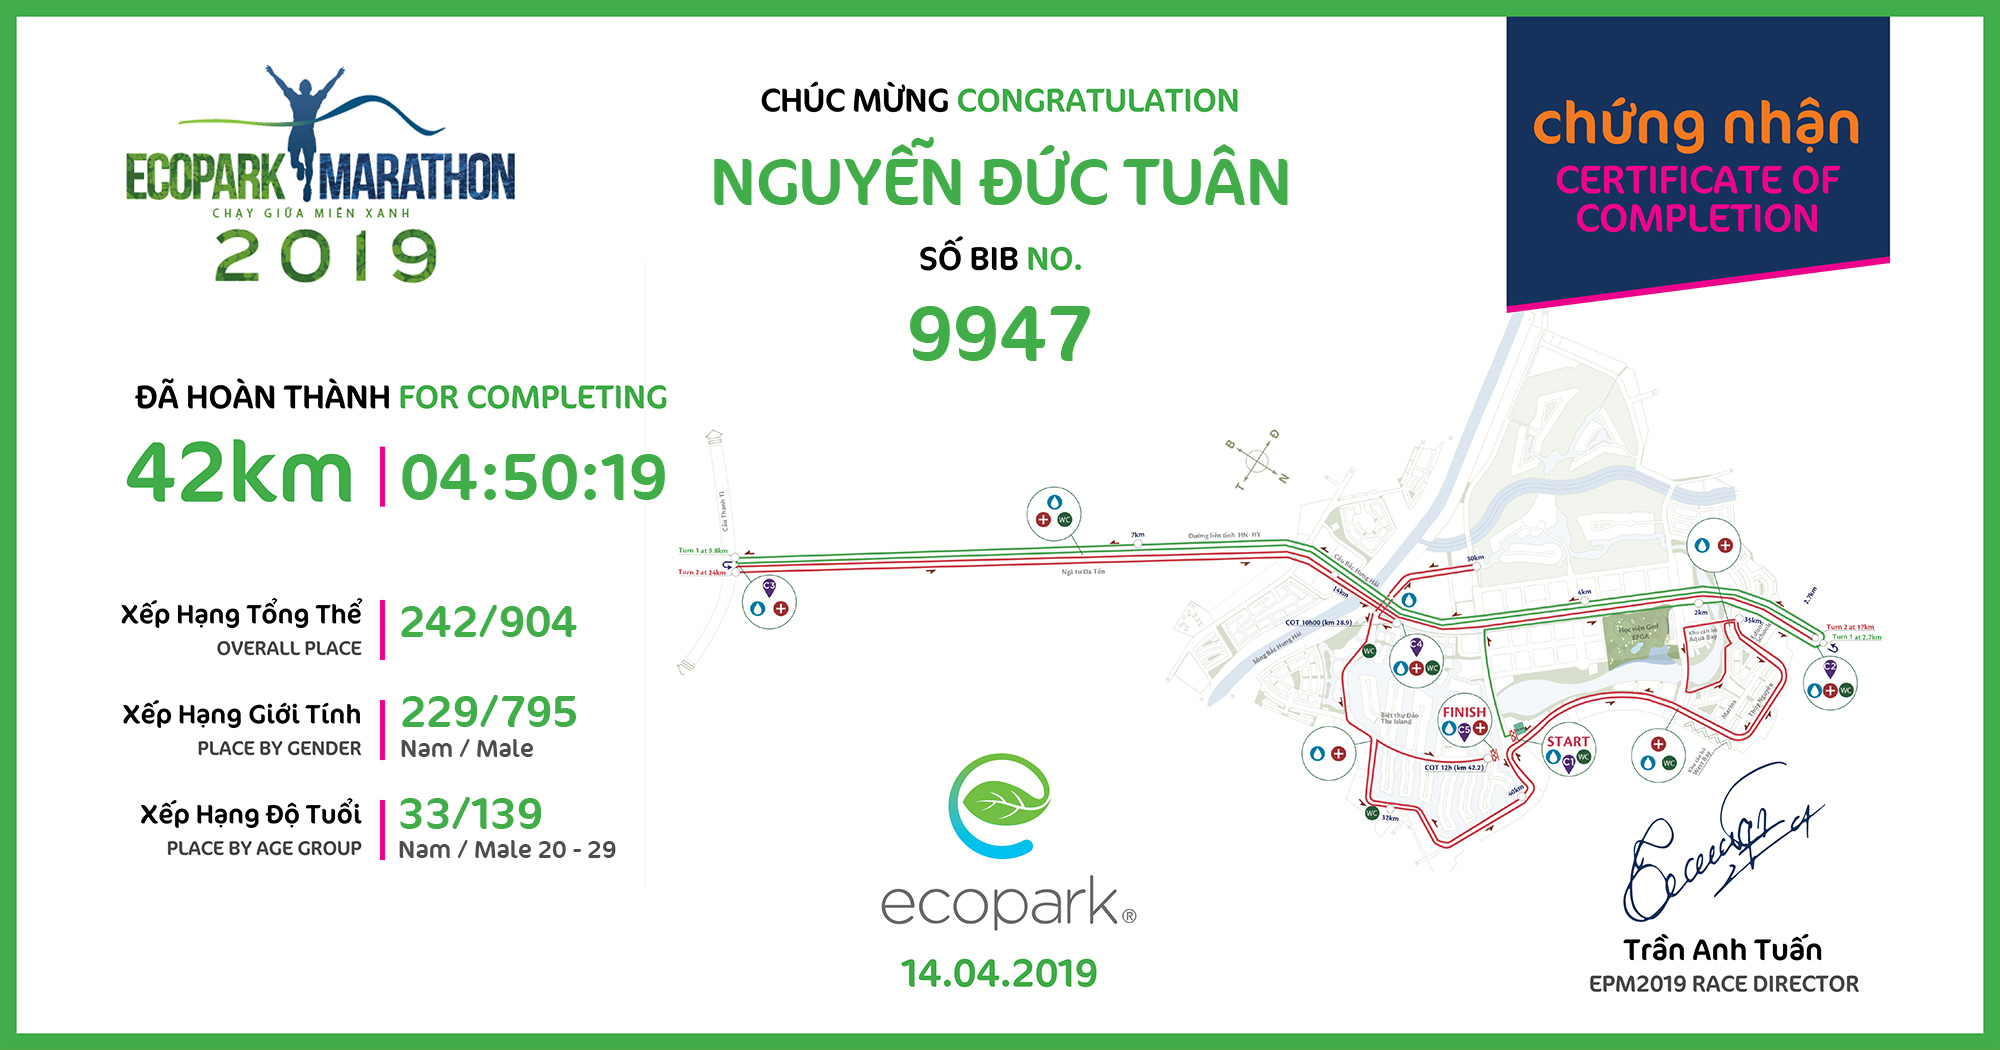 9947 - Nguyễn Đức Tuân